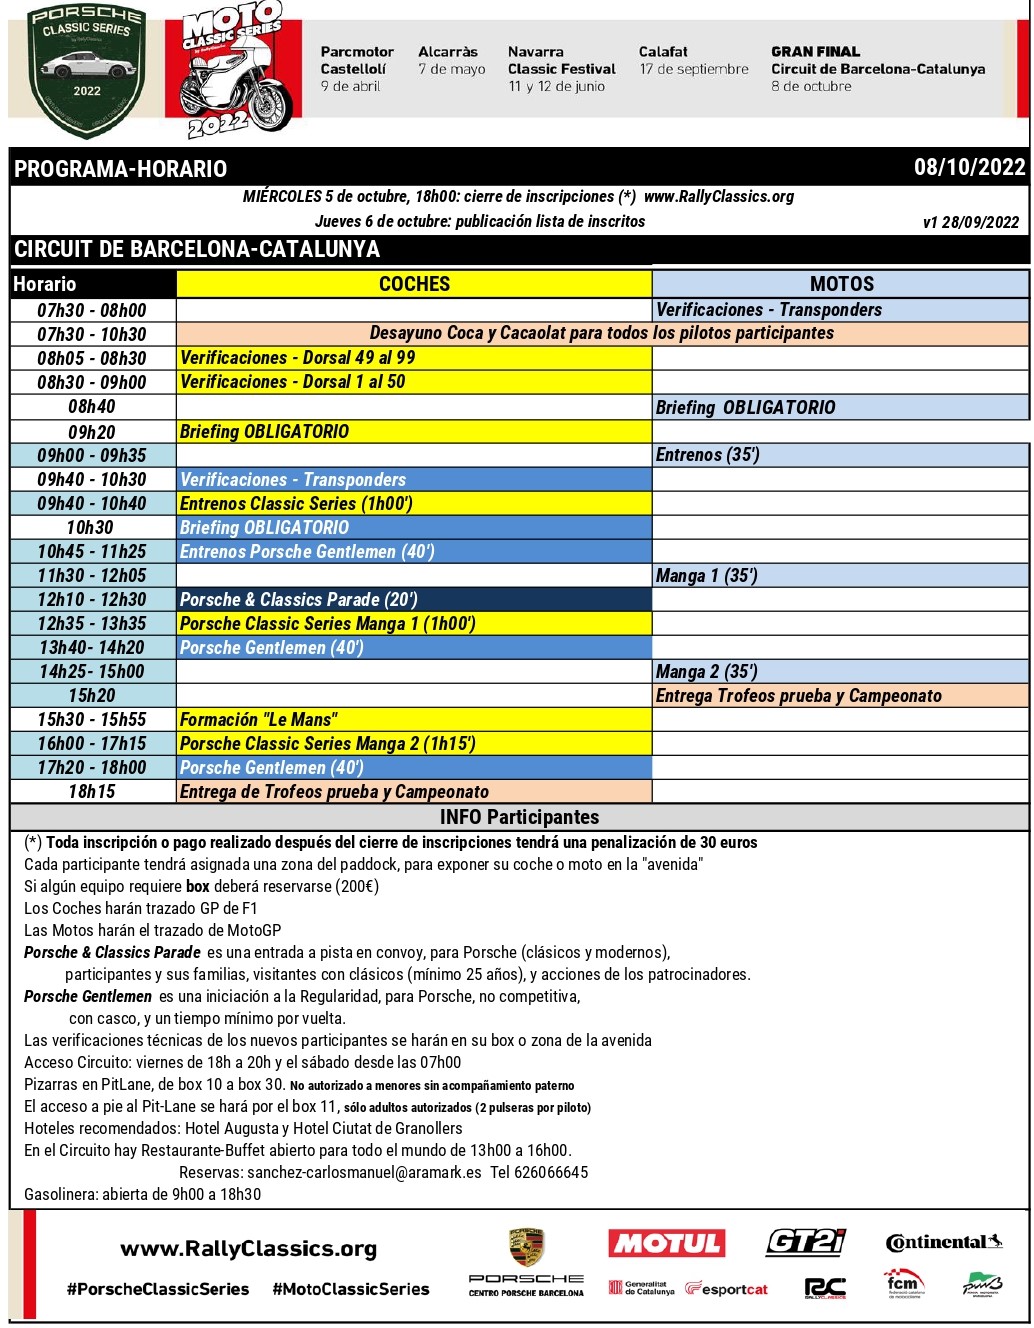 Programa-Horari MotoClassic Series Circuit de Barcelona Catalunya 2022